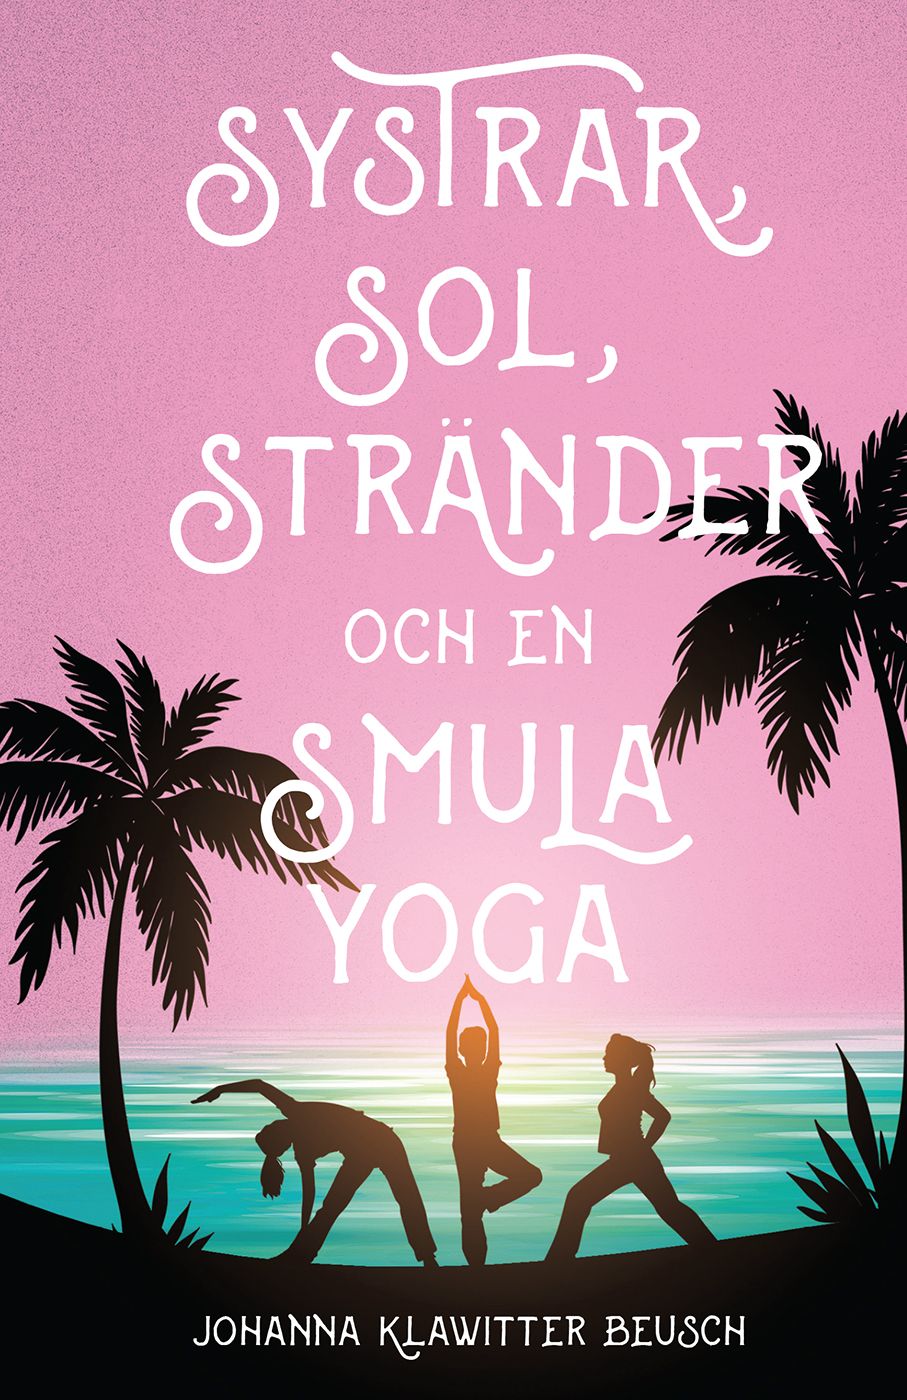 Systrar, sol, stränder och en smula yoga, eBook by Johanna Klawitter Beusch